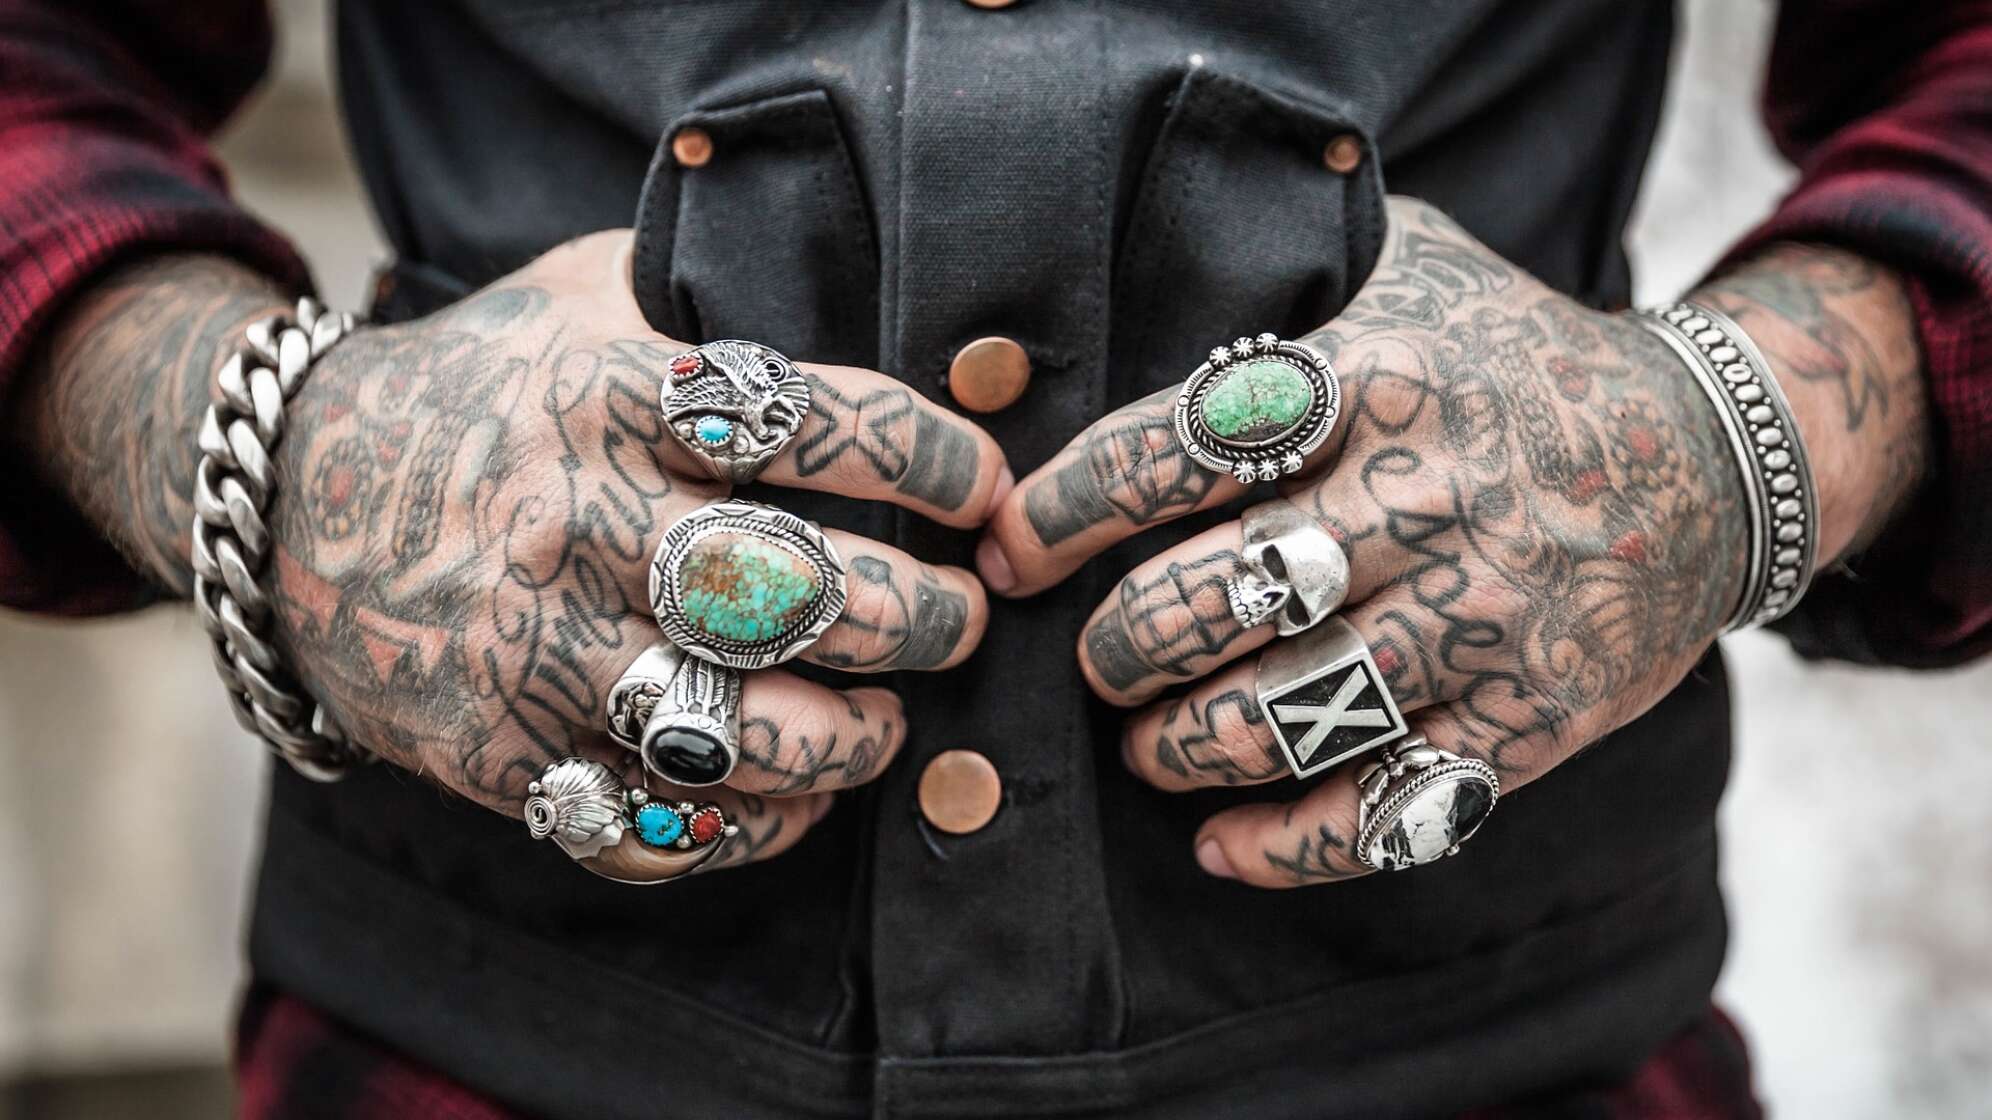 Hände mit Tattoos und Ringen, in Westentasche liegend